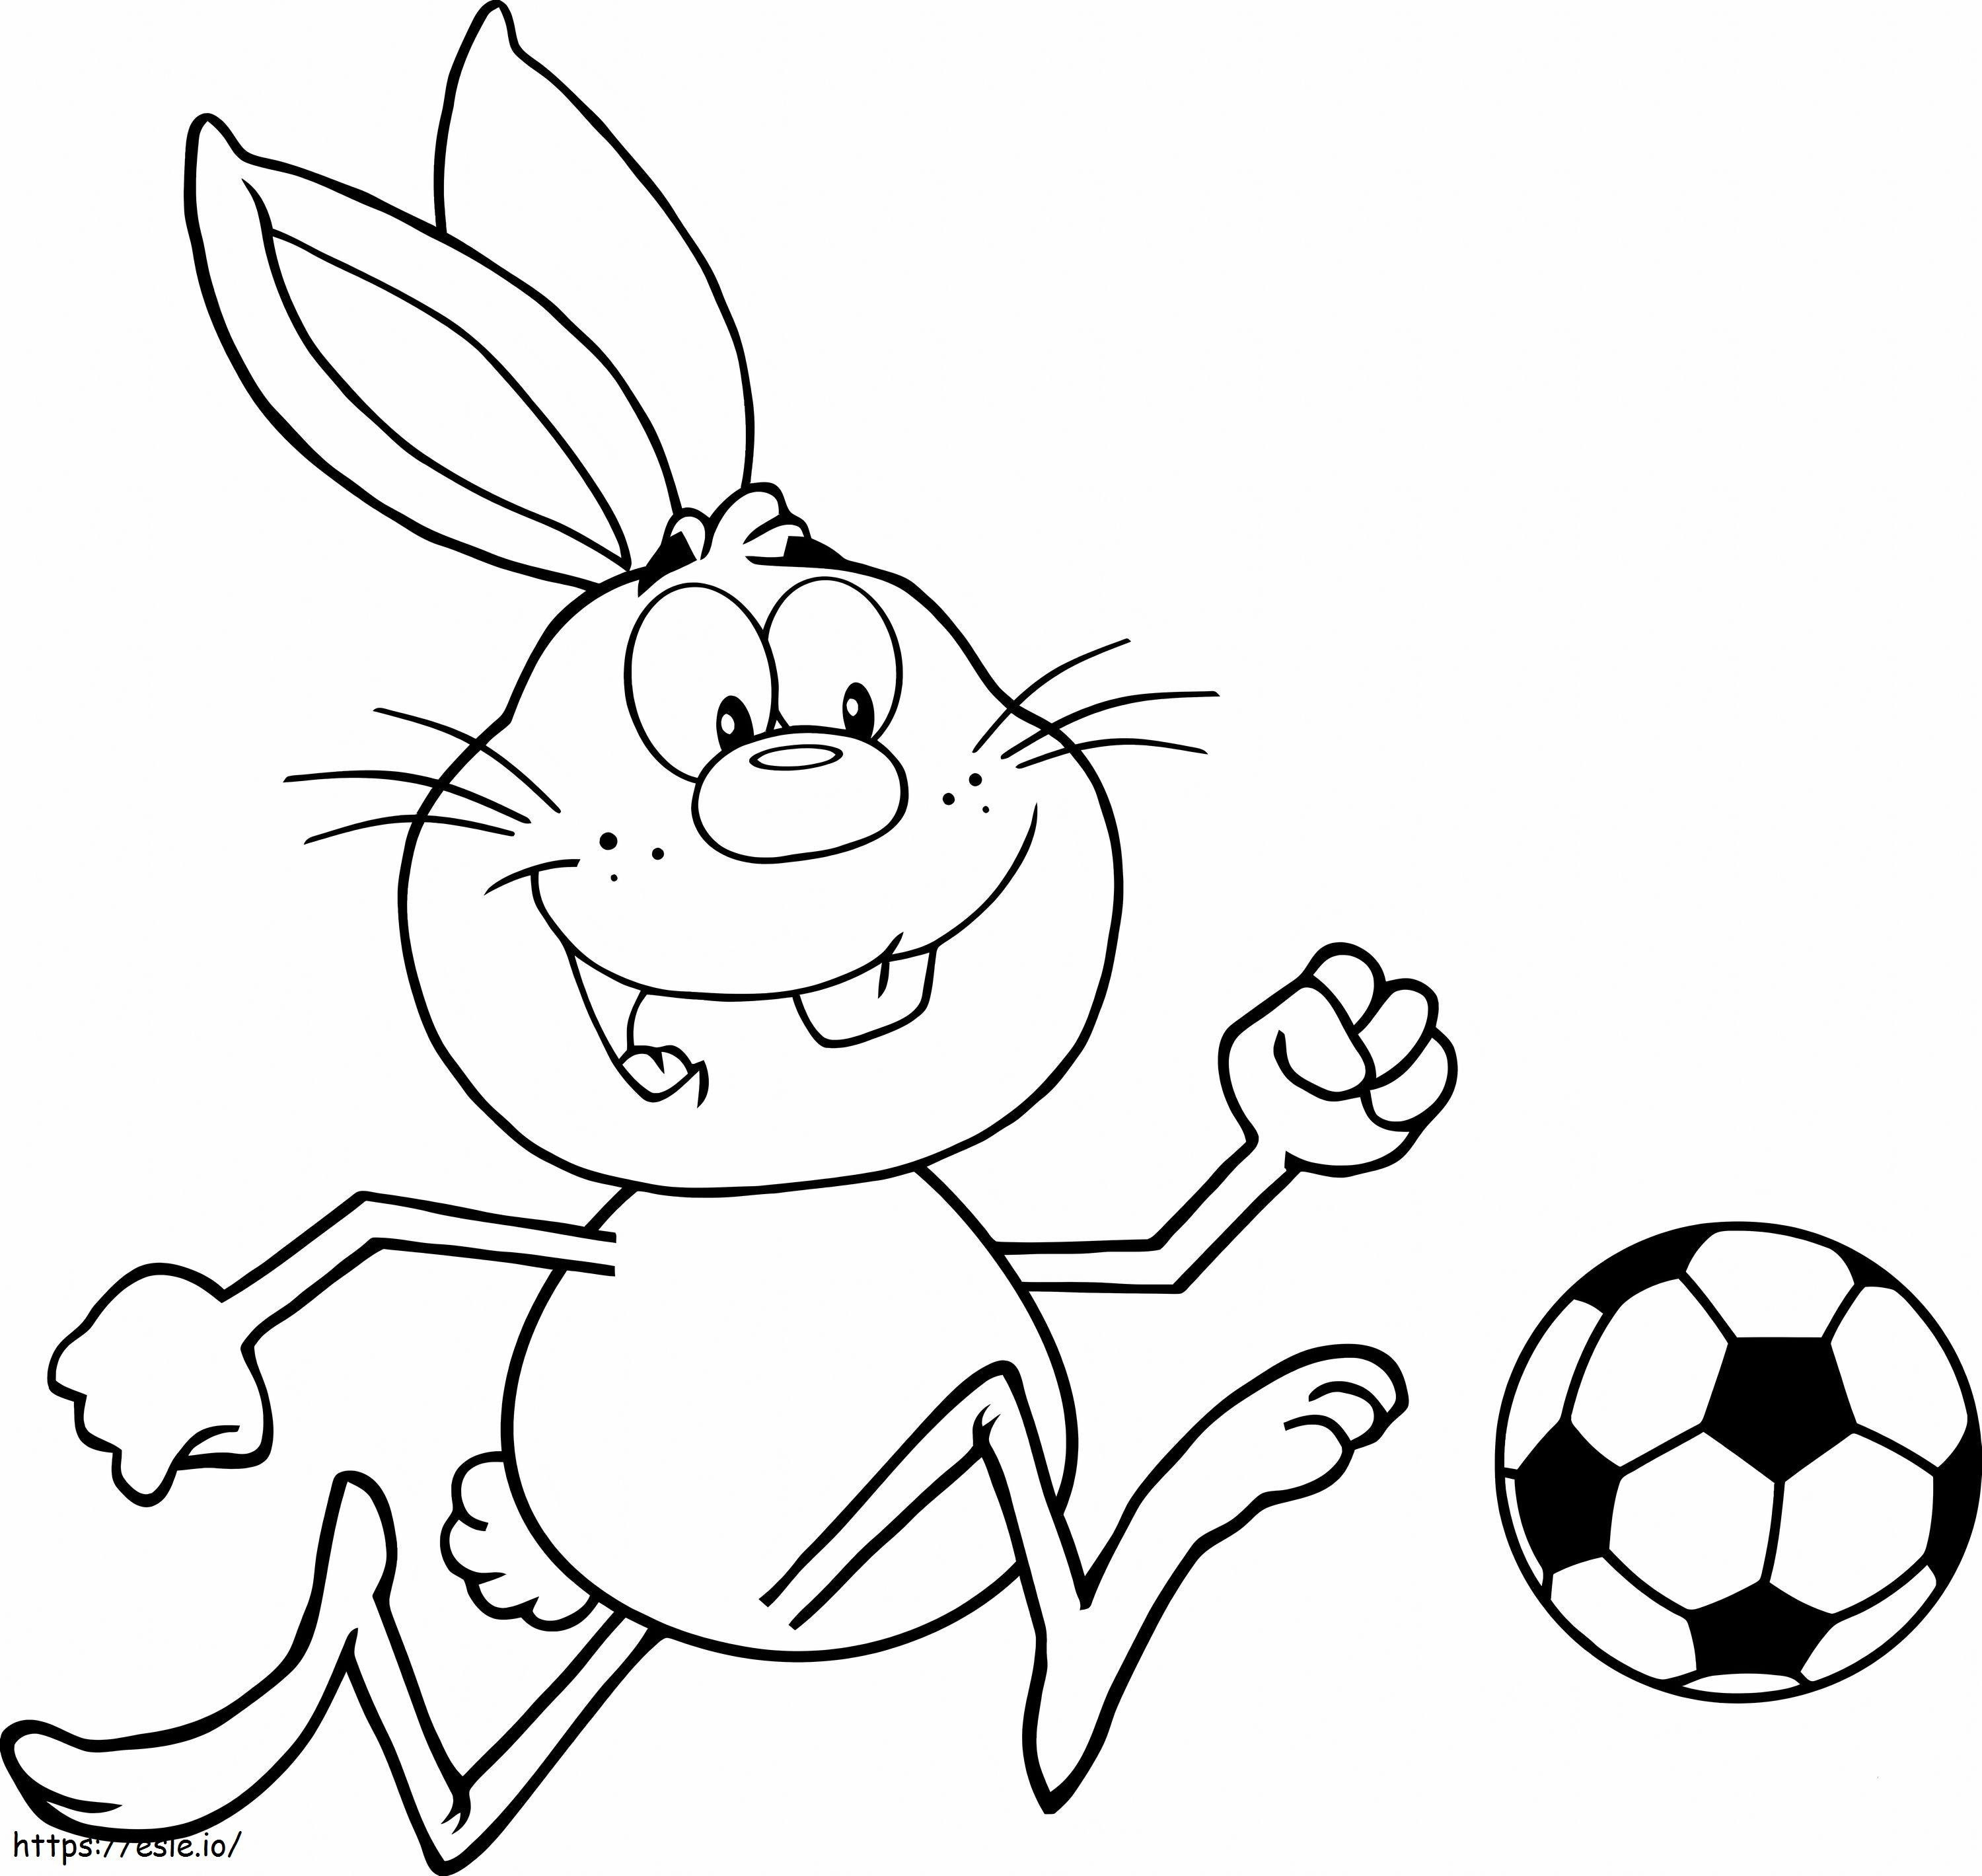 Futbol Oynayan Tavşan boyama